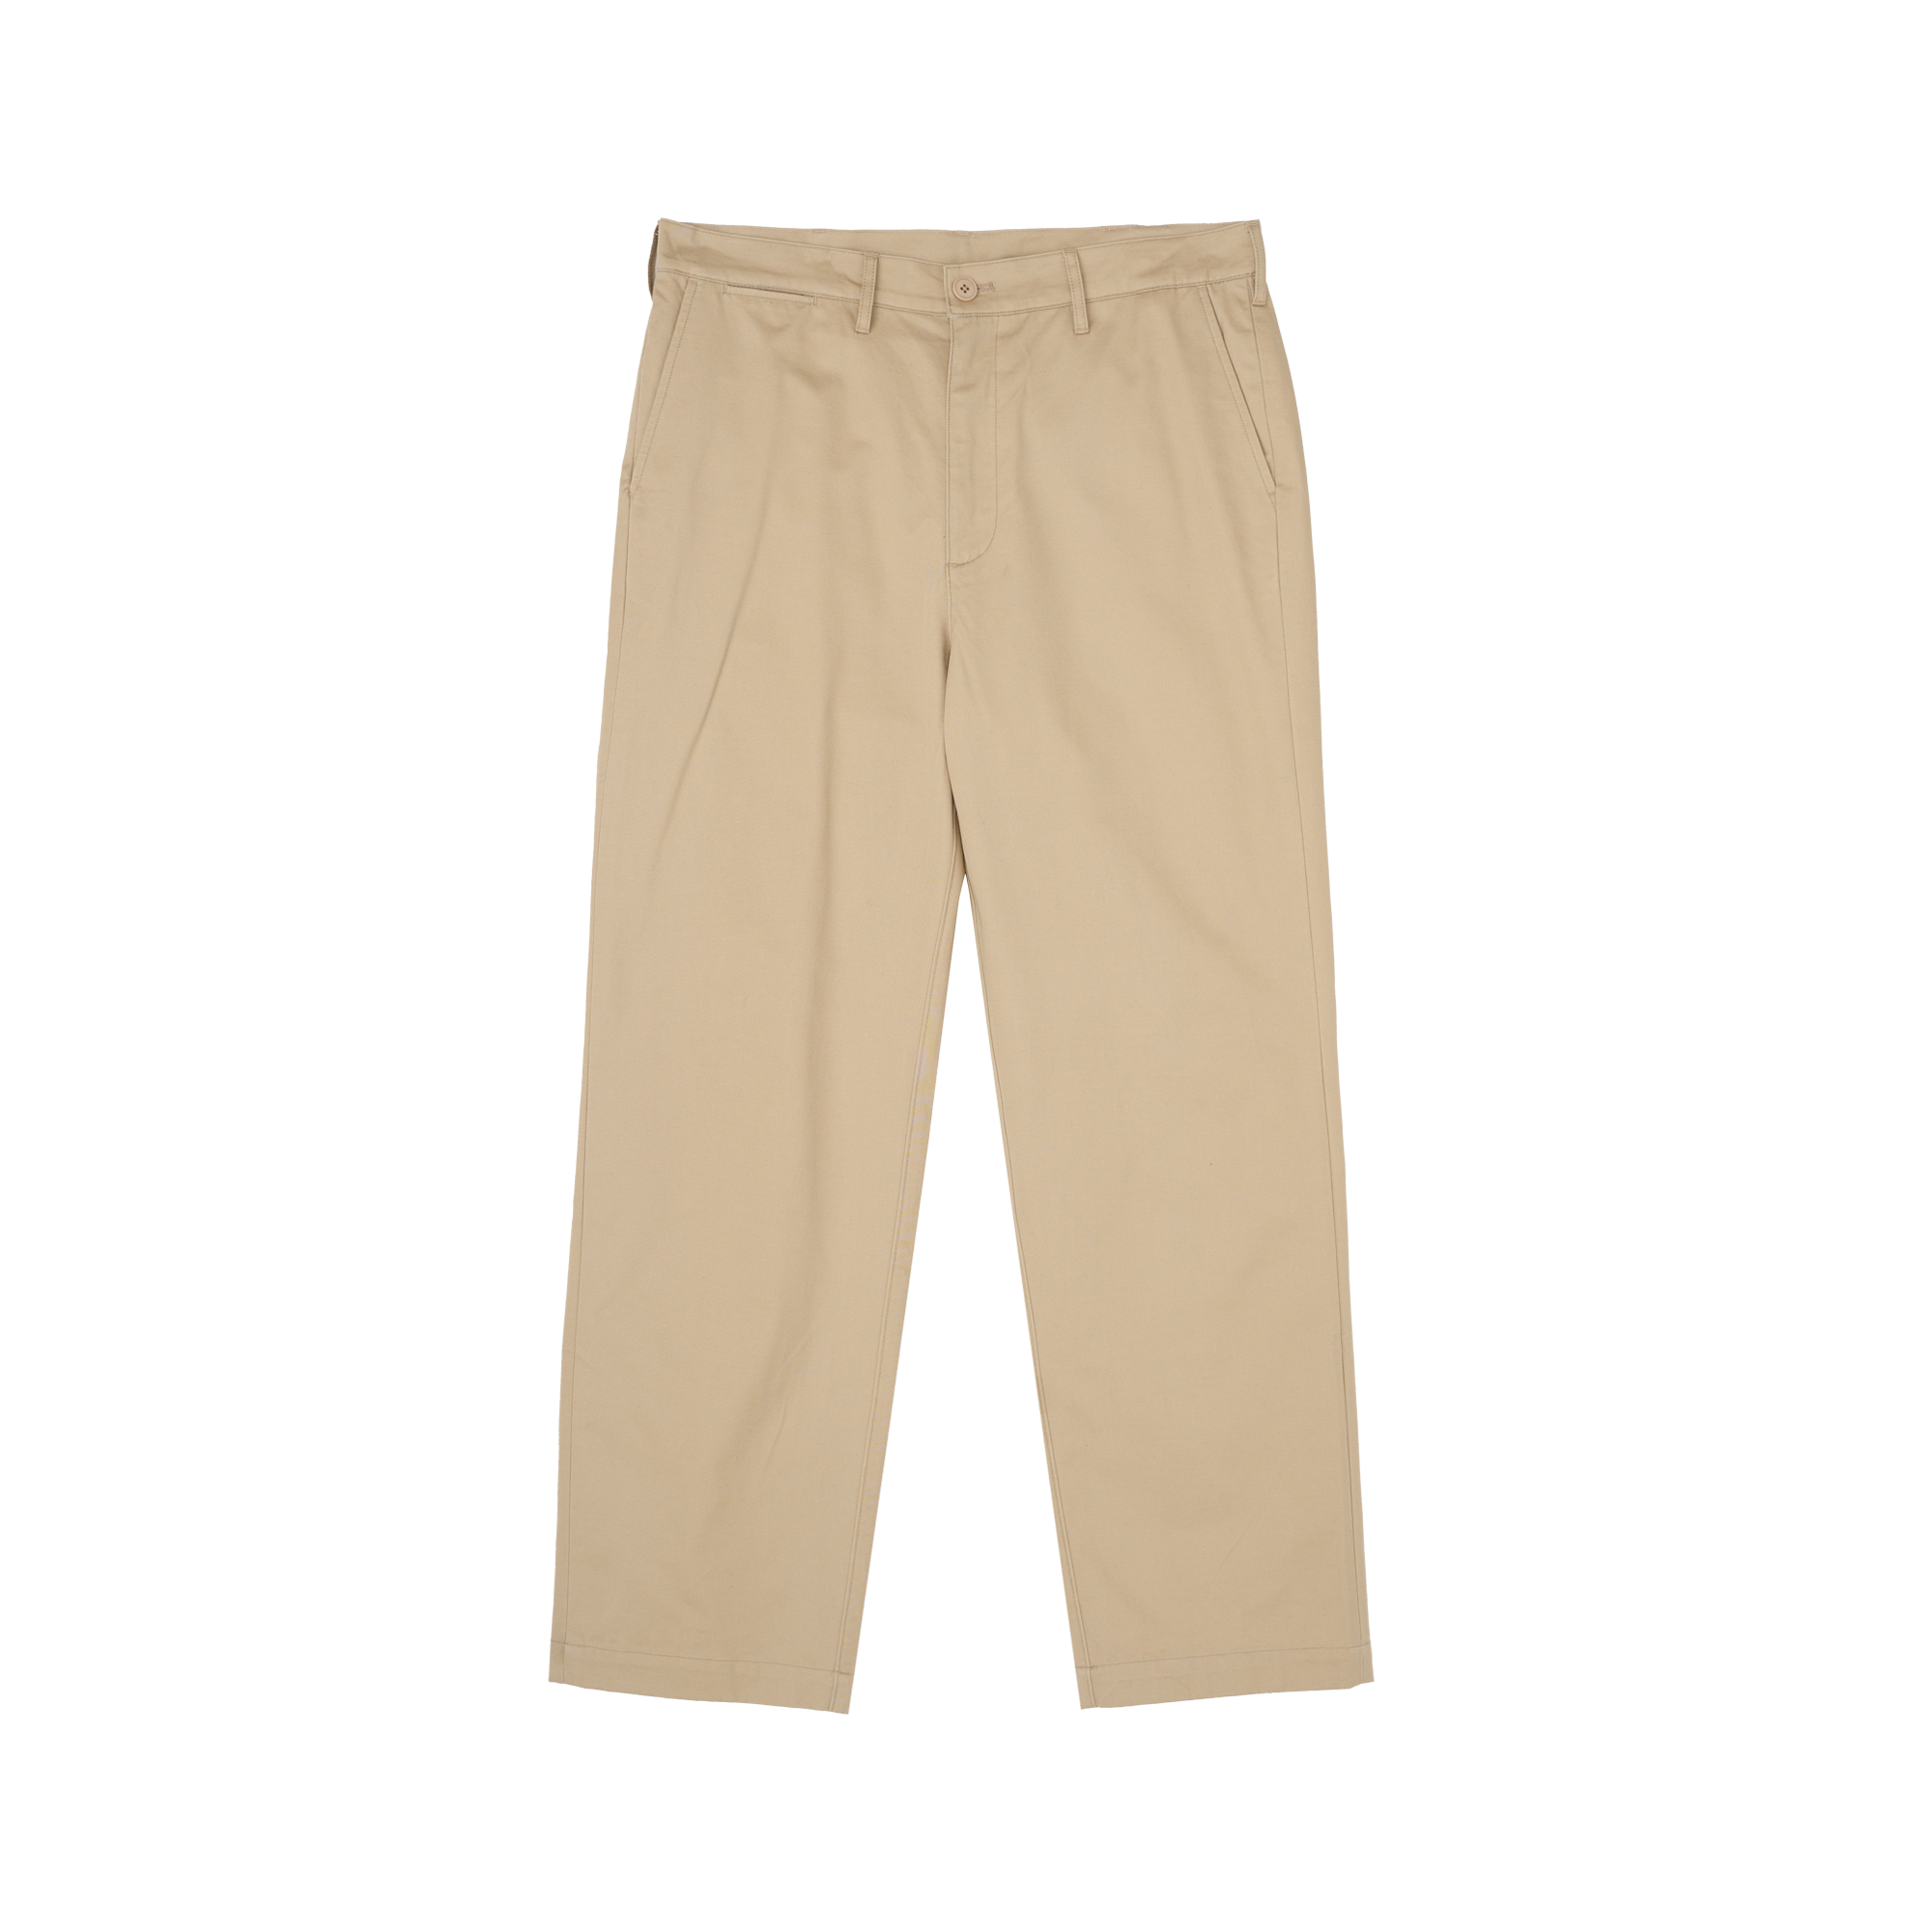 Regular Cotton Pants (Beige)